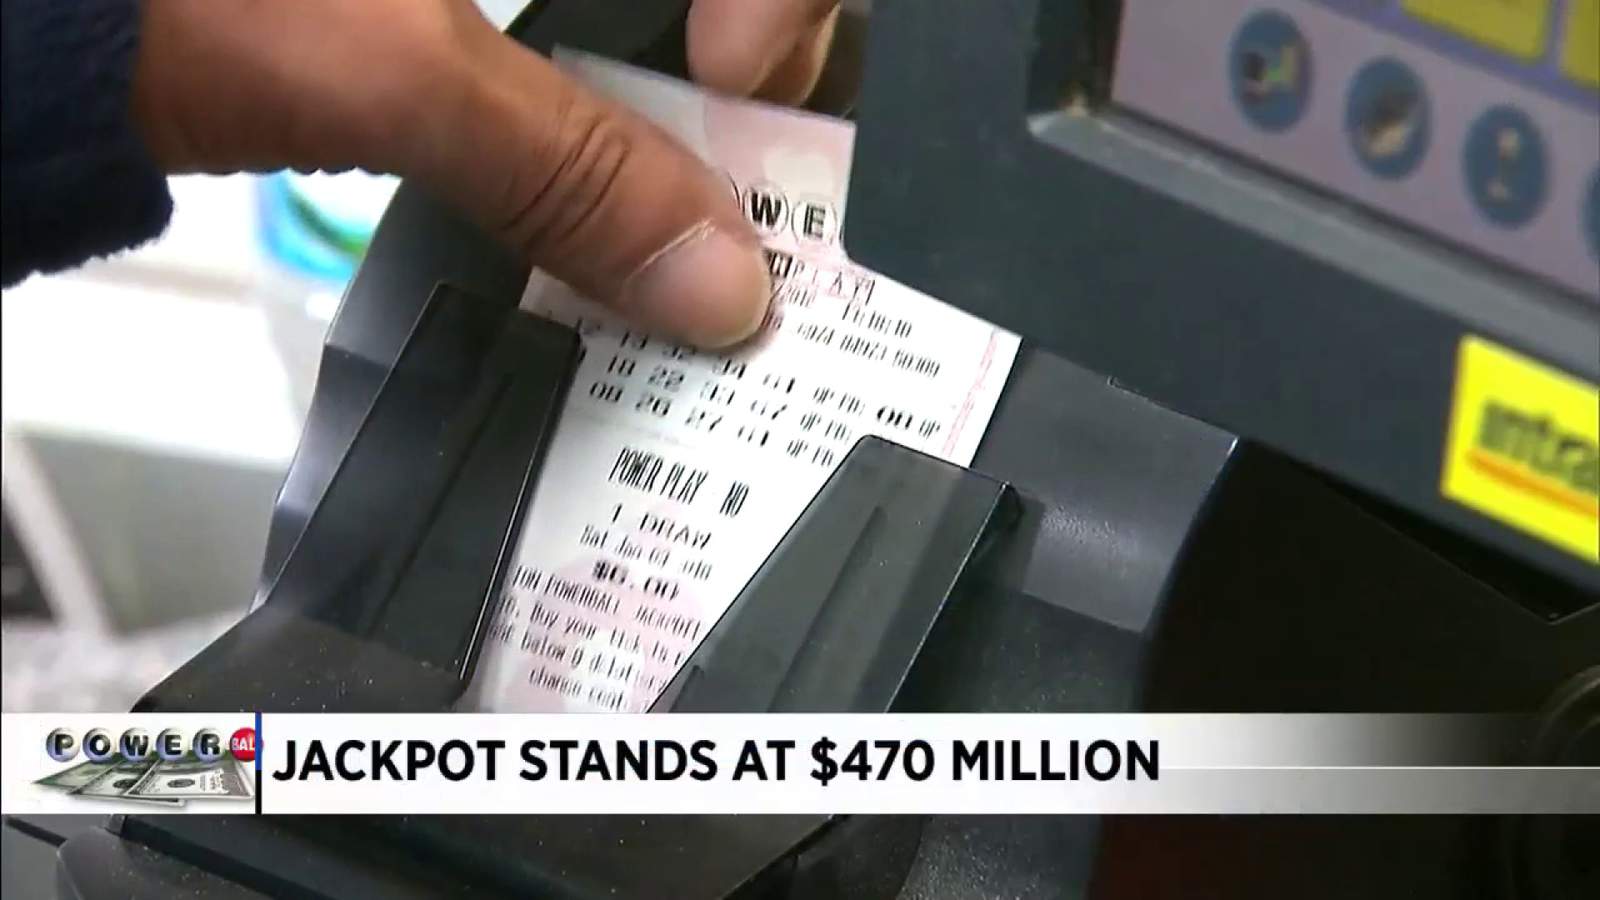 Powerball jackpot rolls over to $550 million